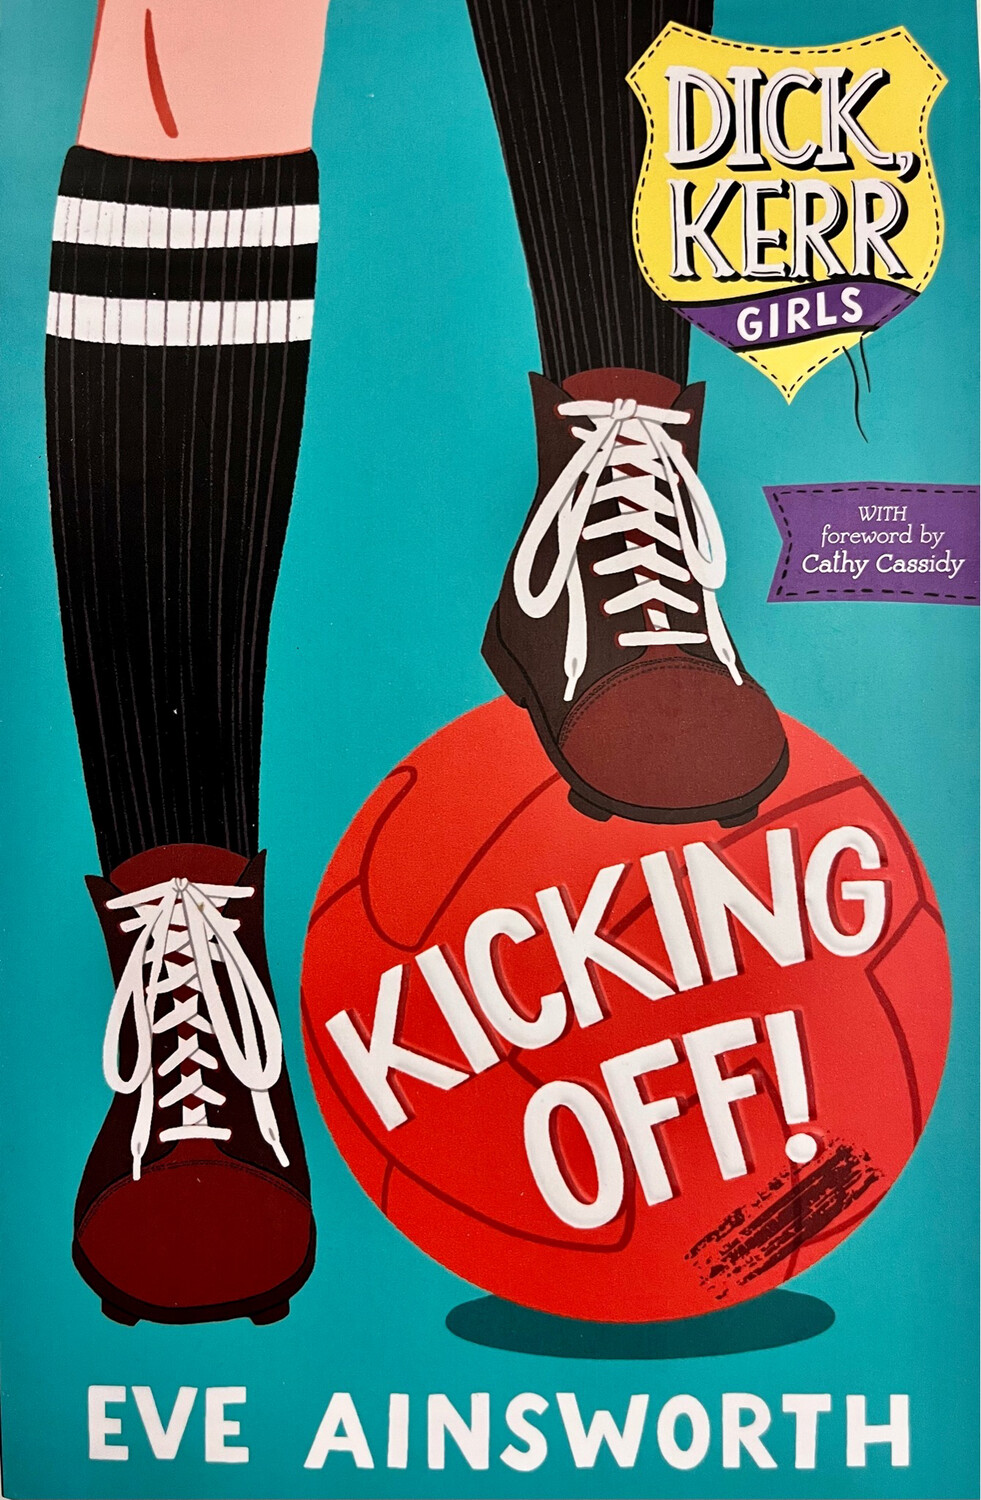 Dick Kerr Girls: Kicking Off